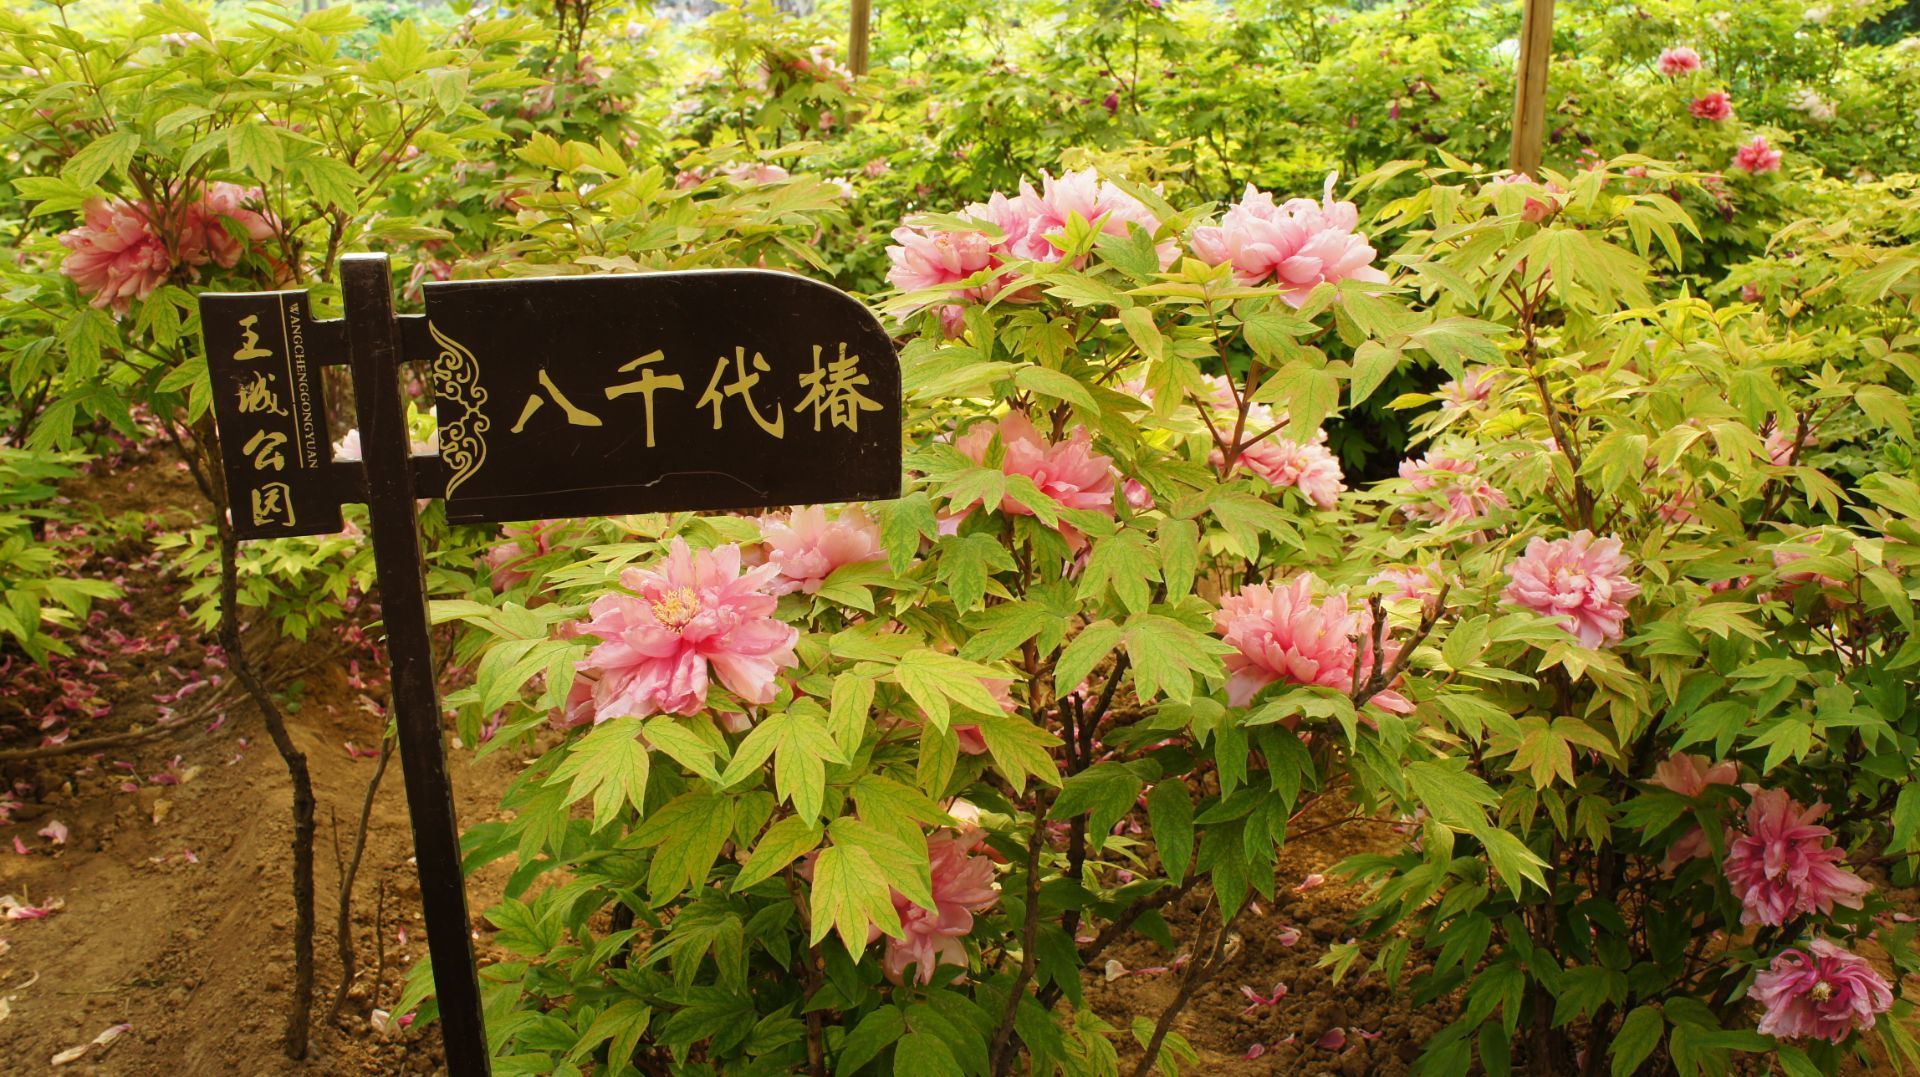 王城公园是闻名天下的洛阳牡丹花会的开幕式及主要展出地之一,牡丹品